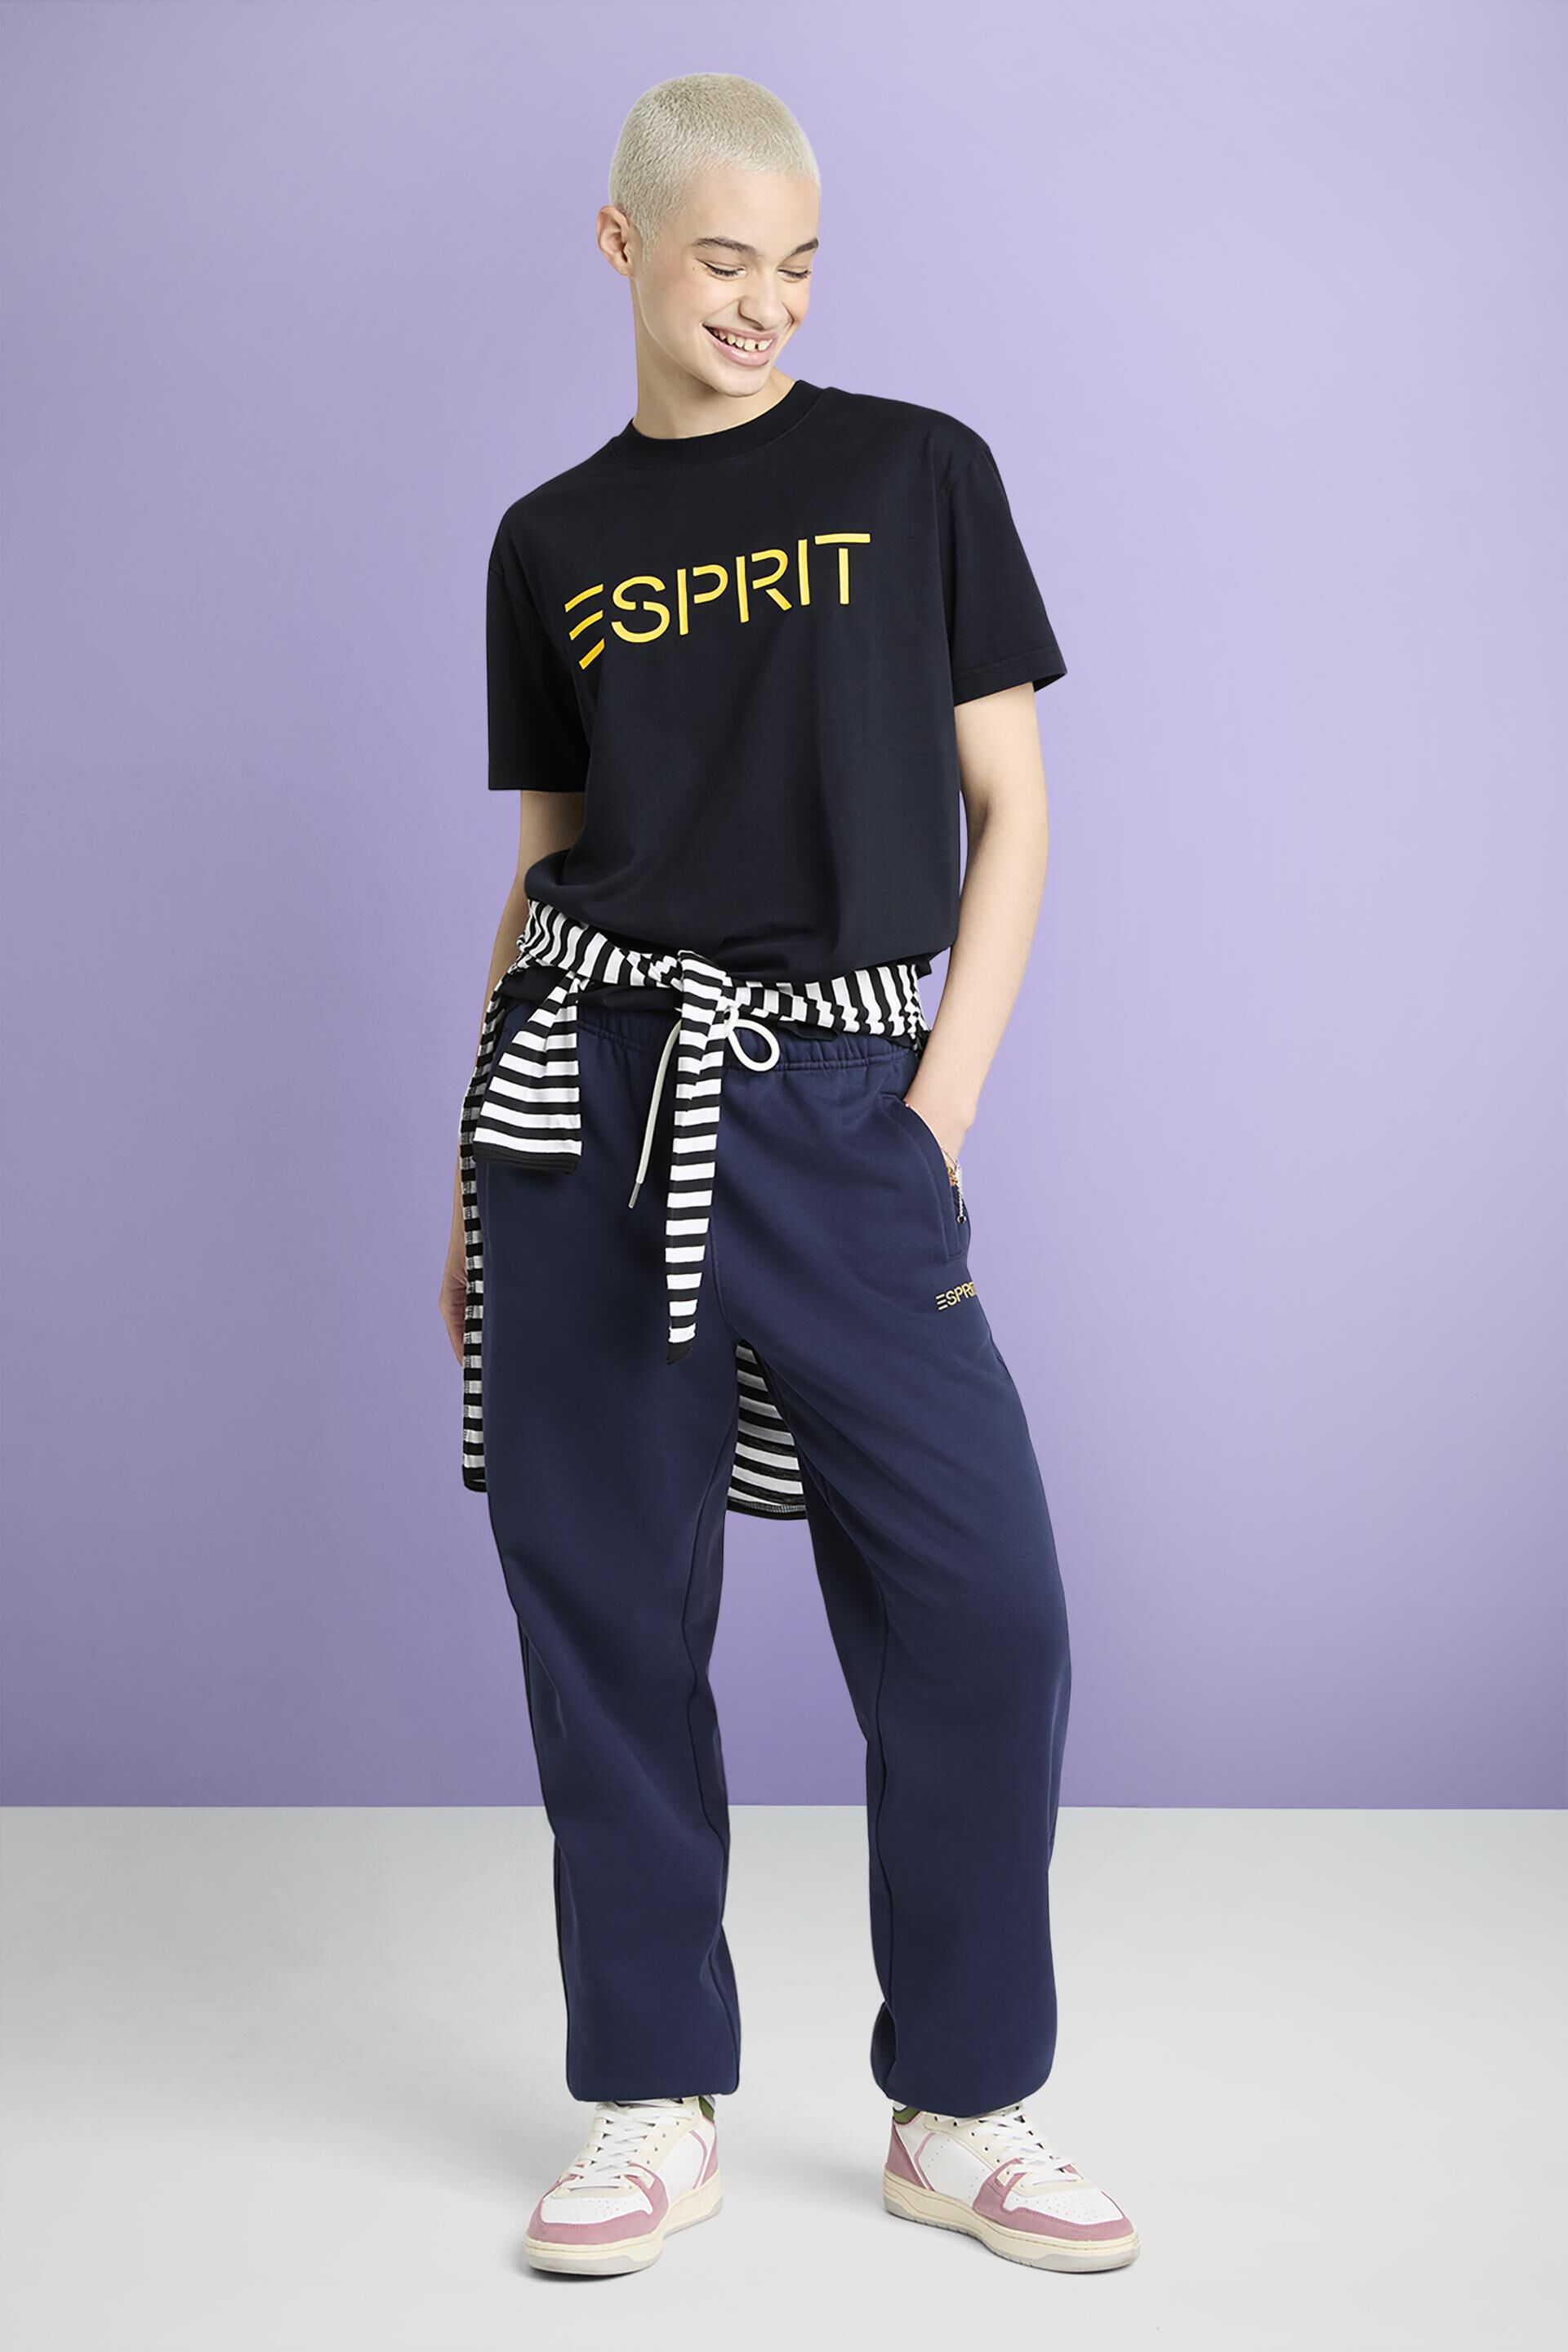 Esprit mit Jersey-Baumwolle aus T-Shirt Logo